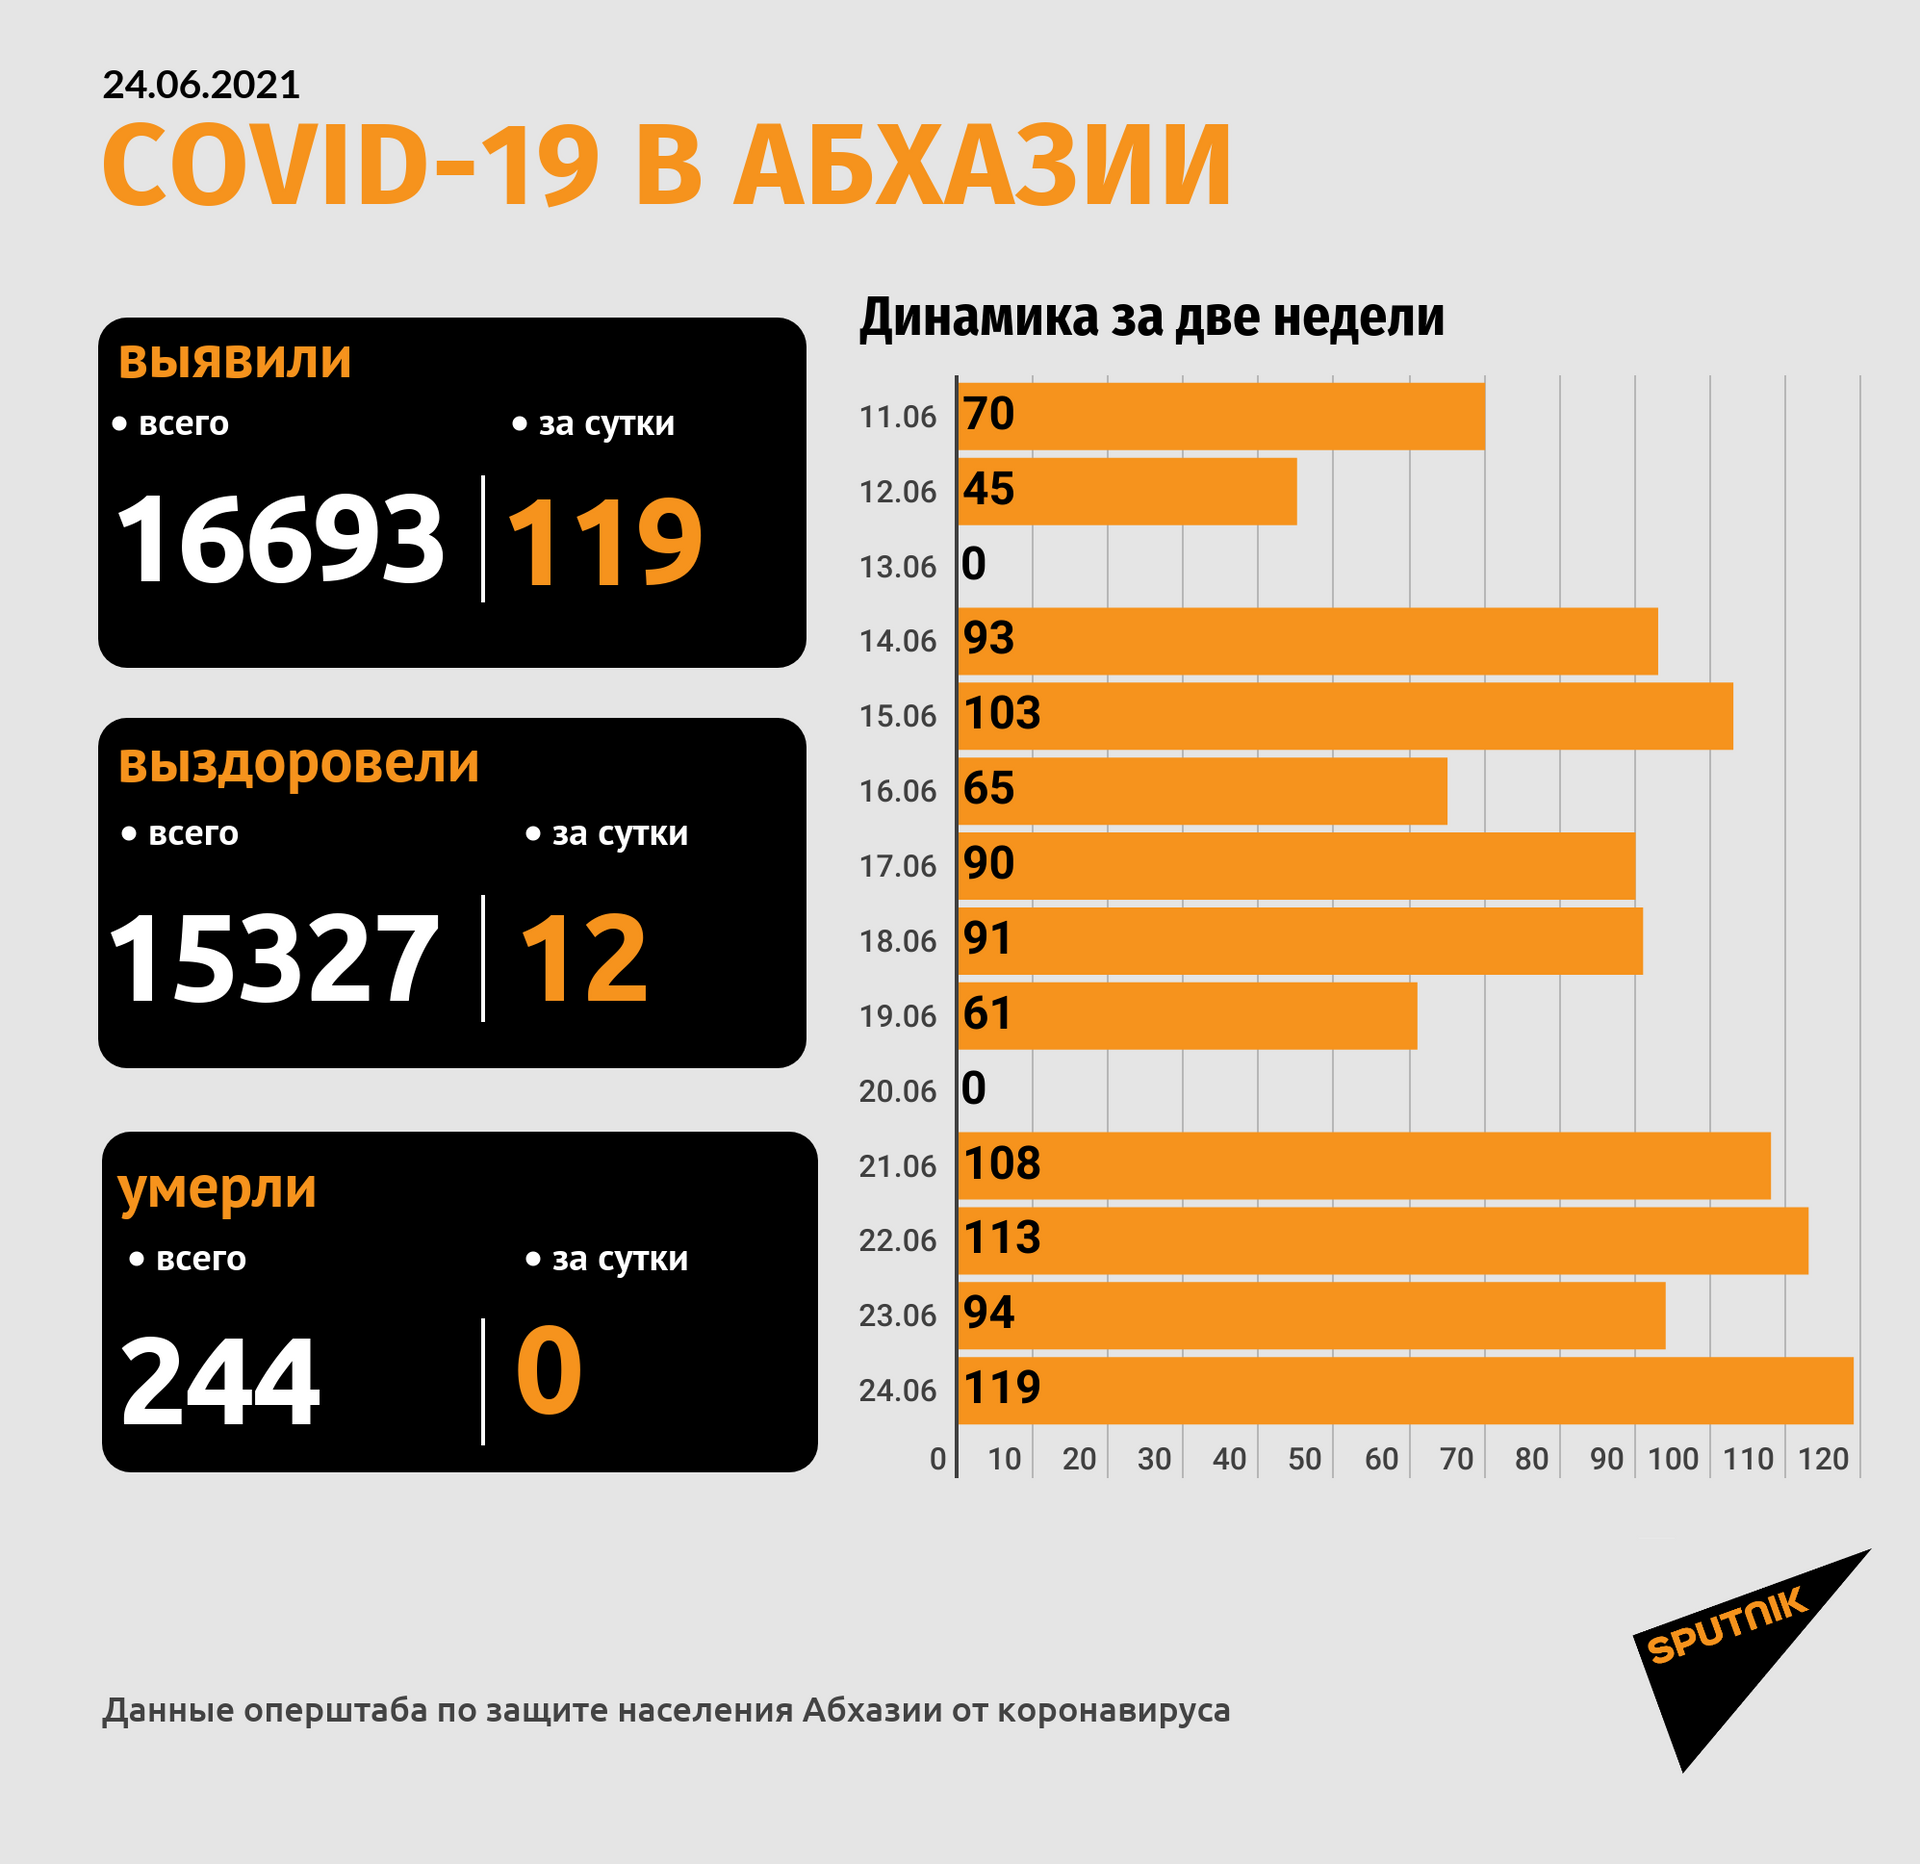 Еще у 119 человек в Абхазии выявили COVID, растет число стационарных больных - Sputnik Абхазия, 1920, 24.06.2021